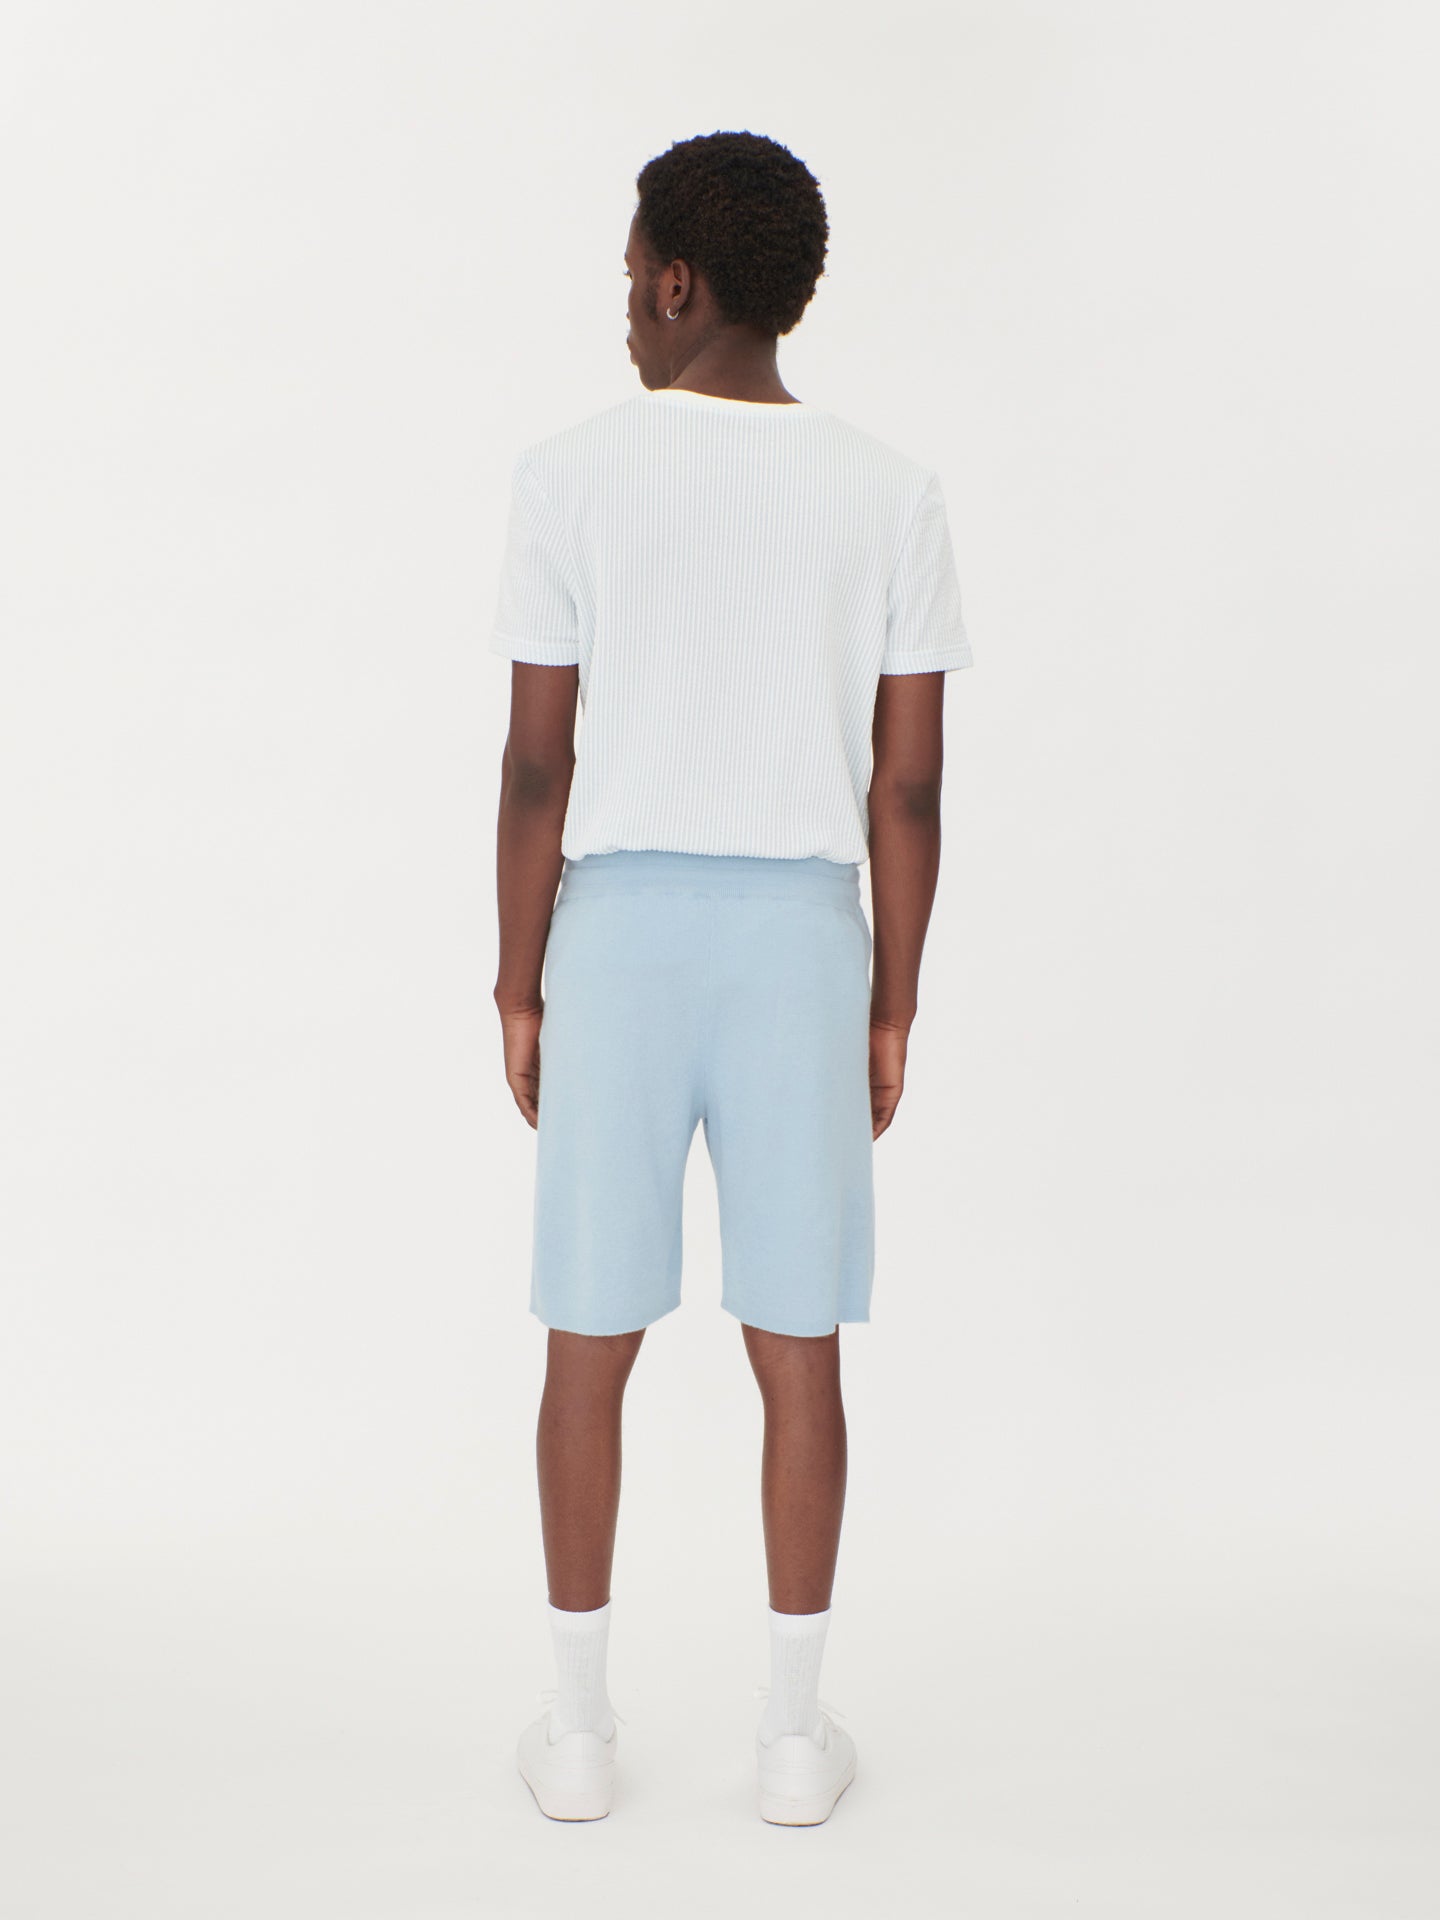 Silk Cashmere Men's Shorts Navy - Gobi Cashmere, S / Cerulean / MK156-11-7250